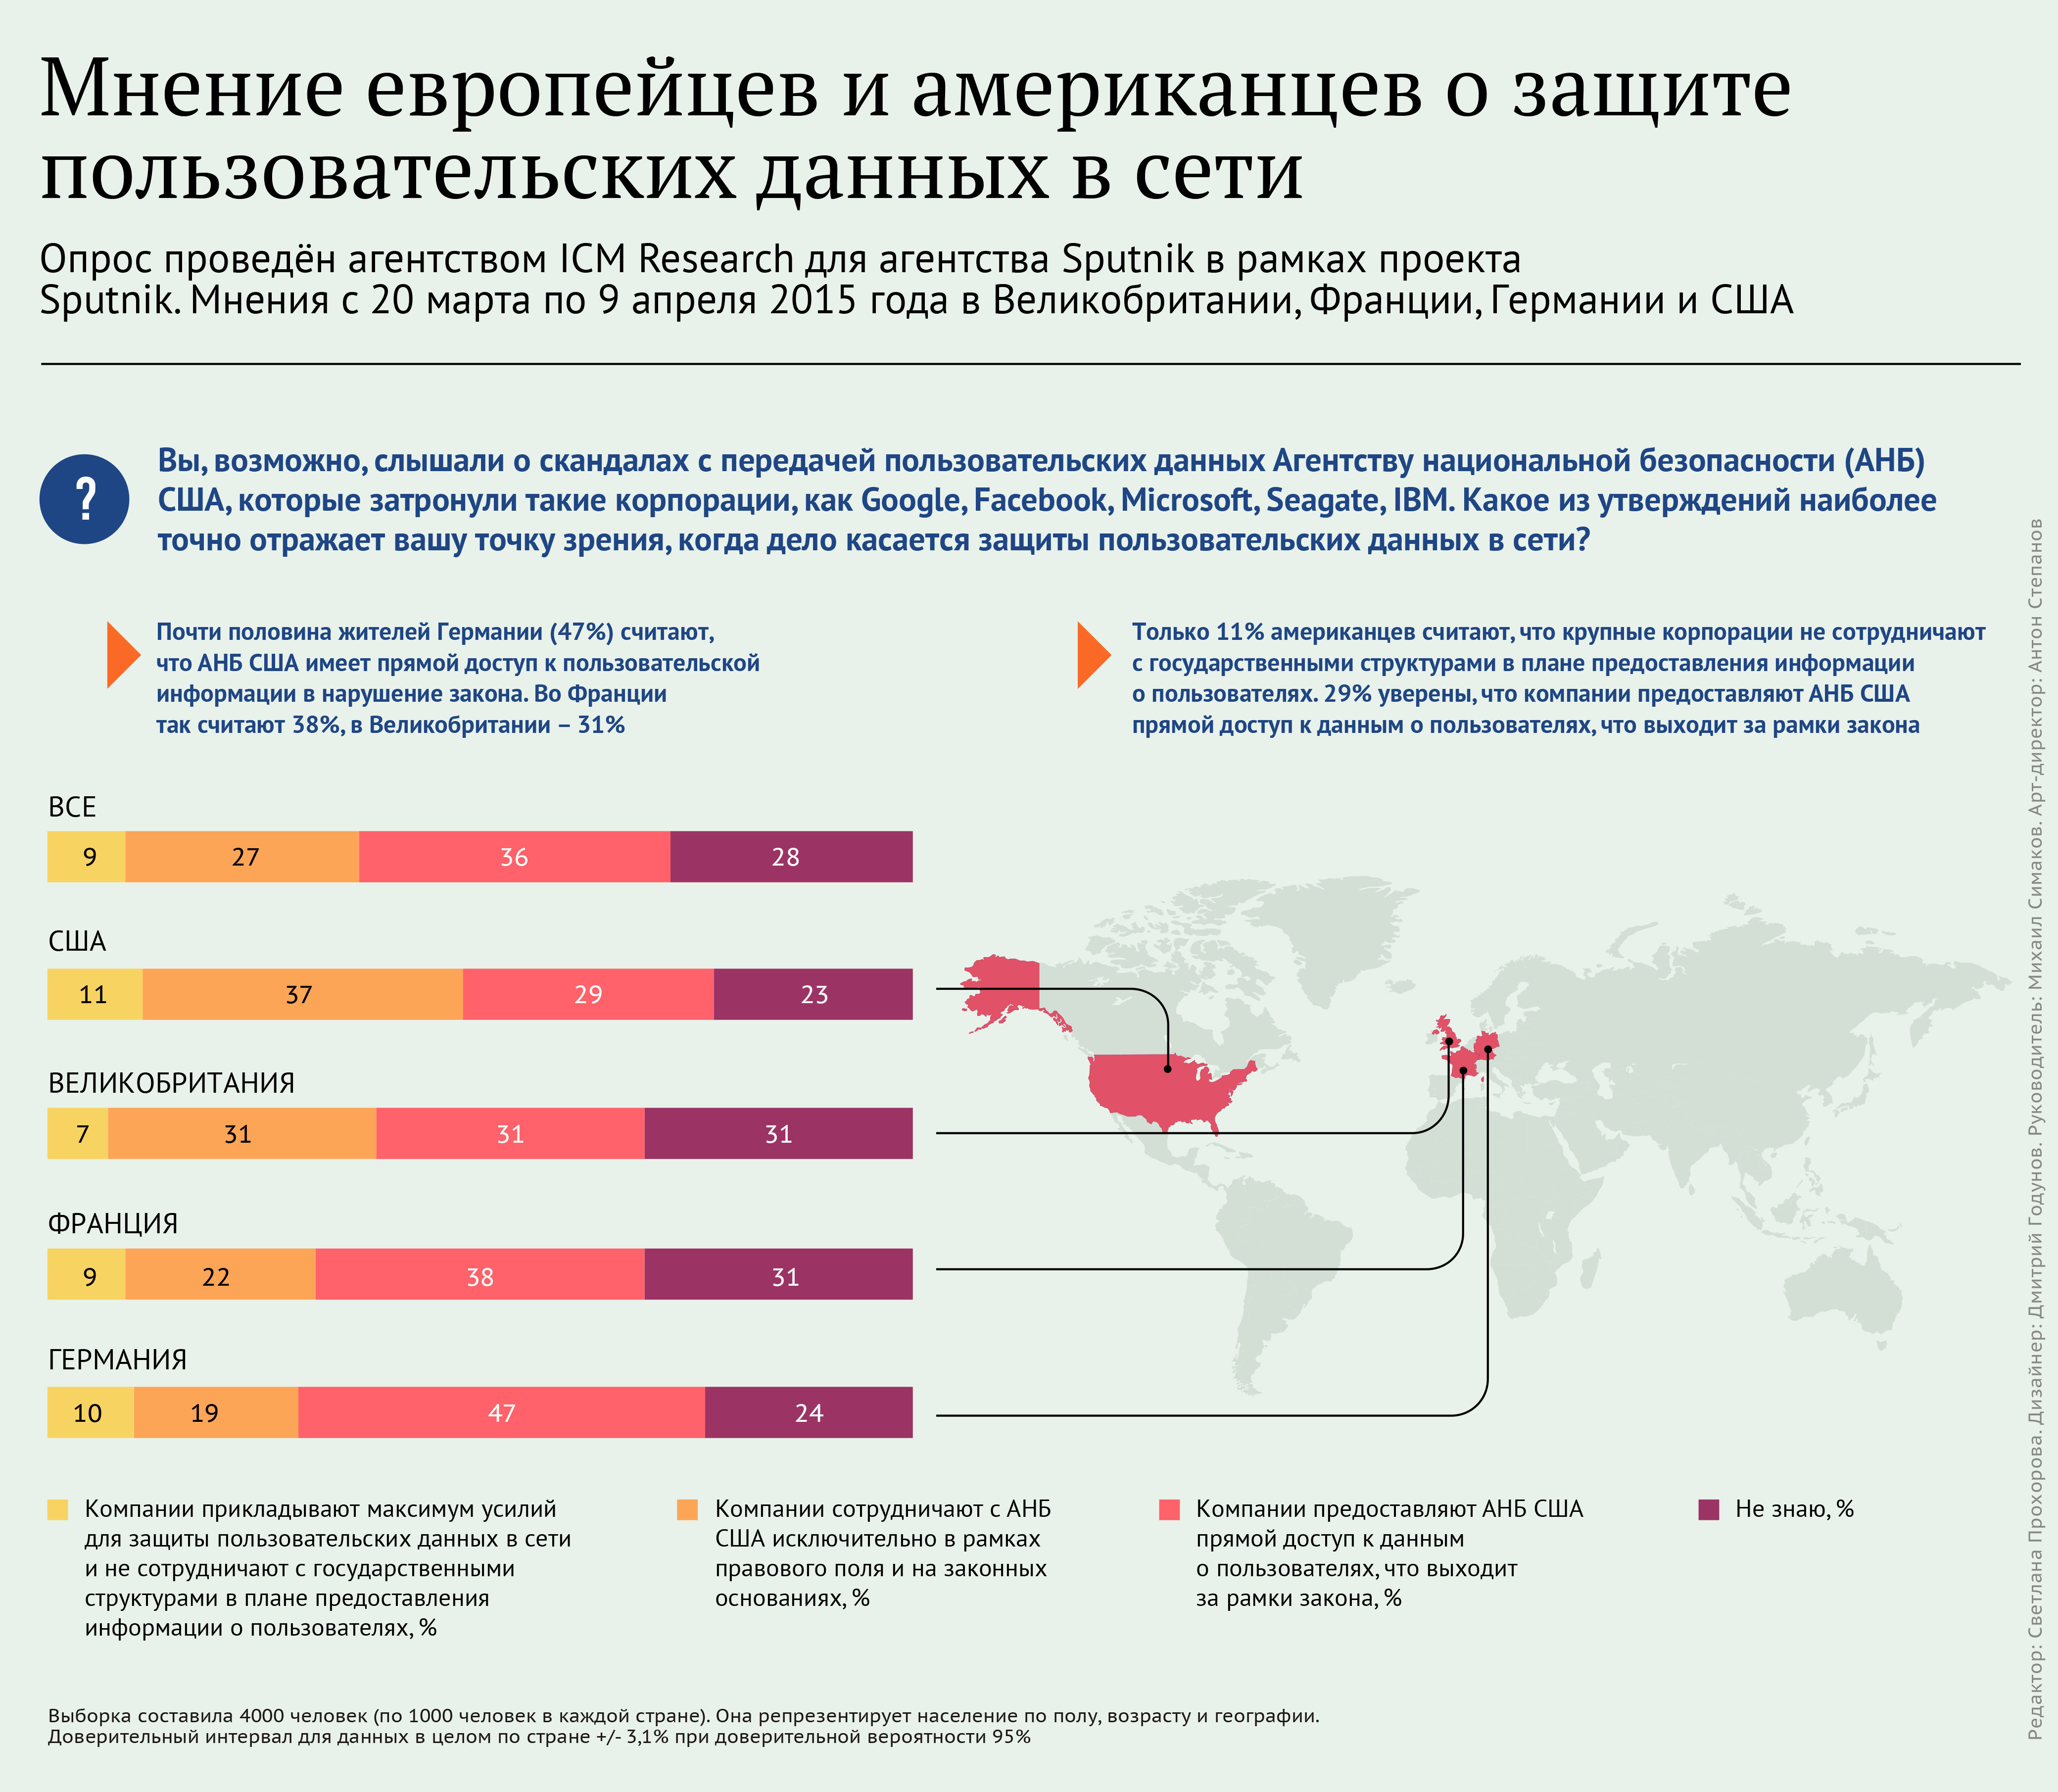 Мнение европейцев и американцев о защите пользовательских данных в сети - Sputnik Таджикистан